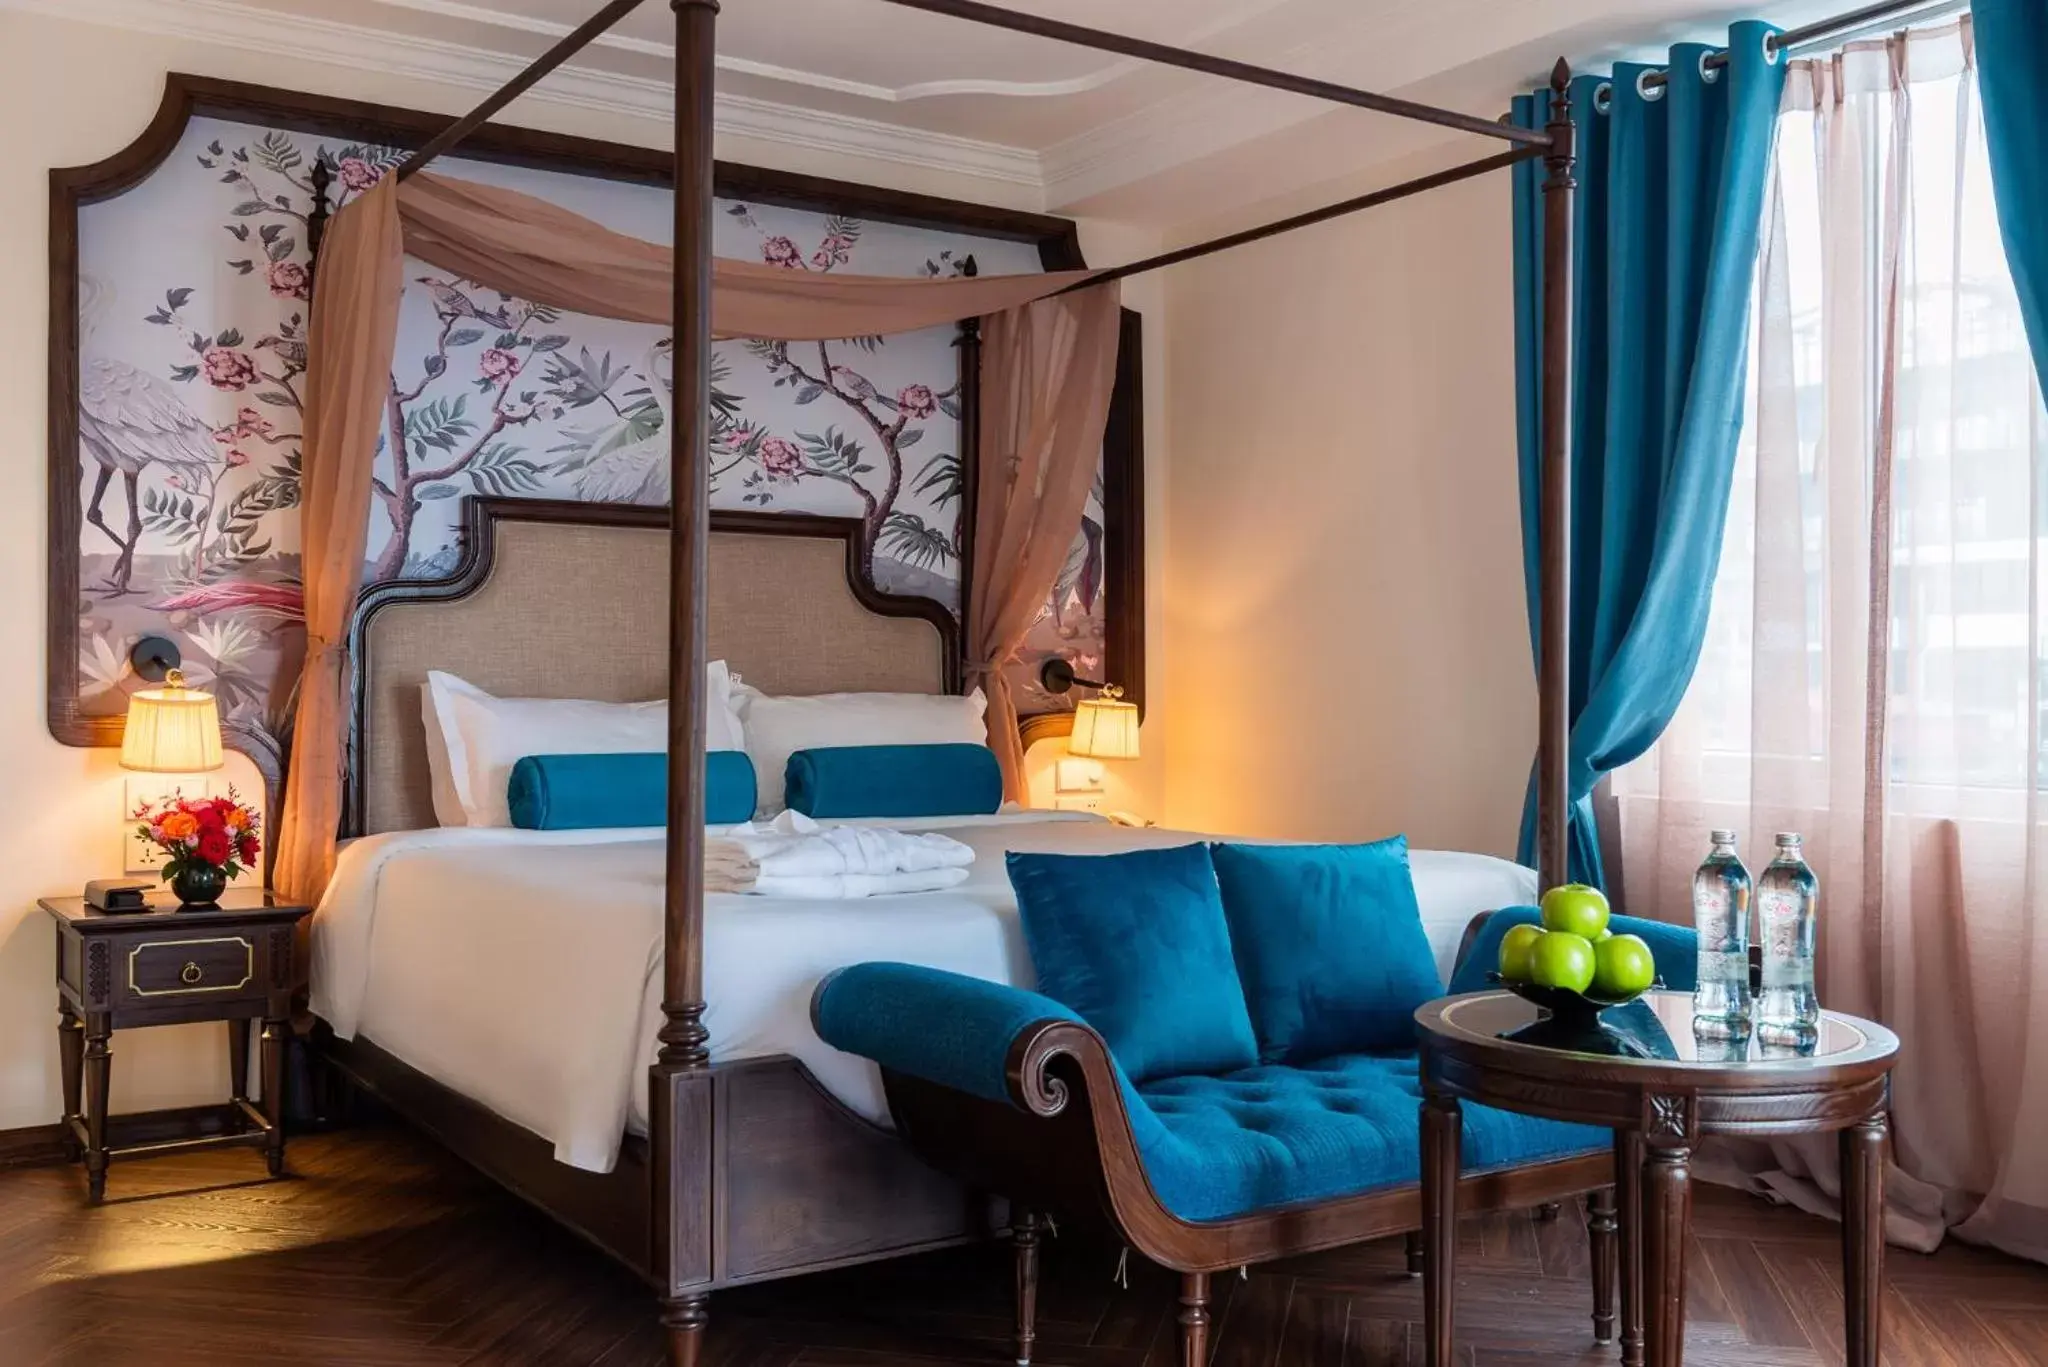 Bed in Hanoi Tirant Hotel